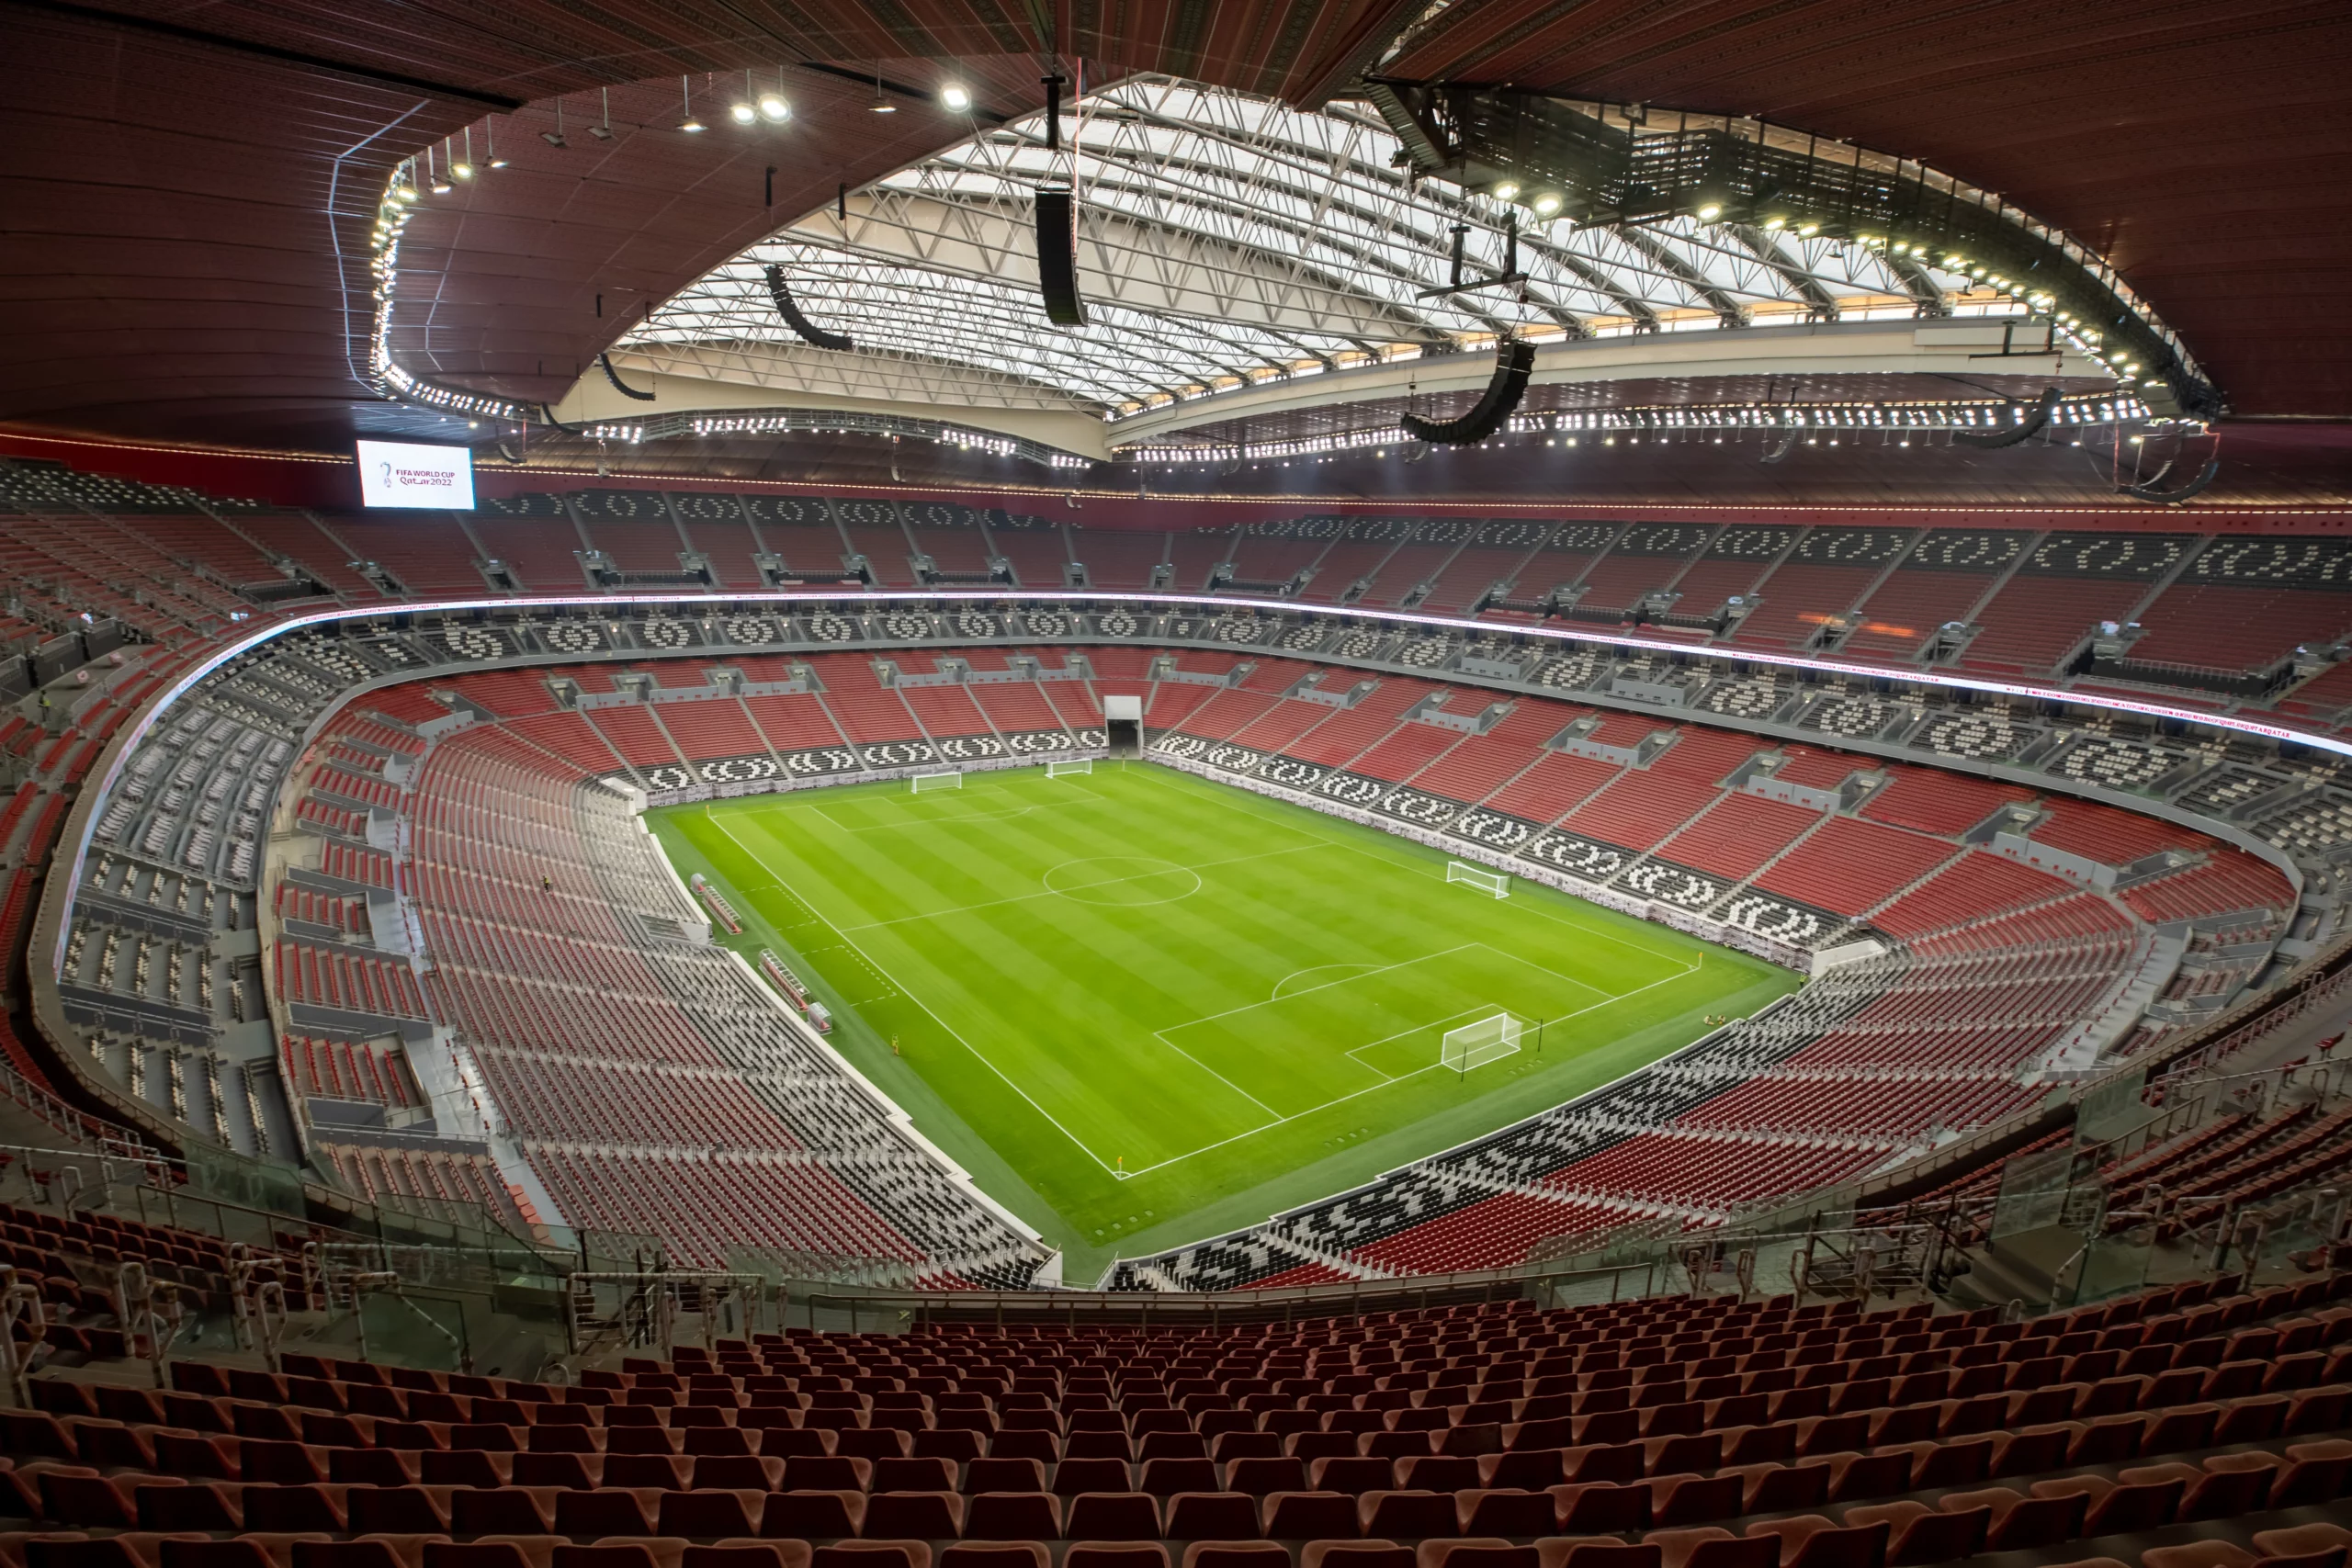 Maak kennis met de 8 prachtige stadions van het WK 2022